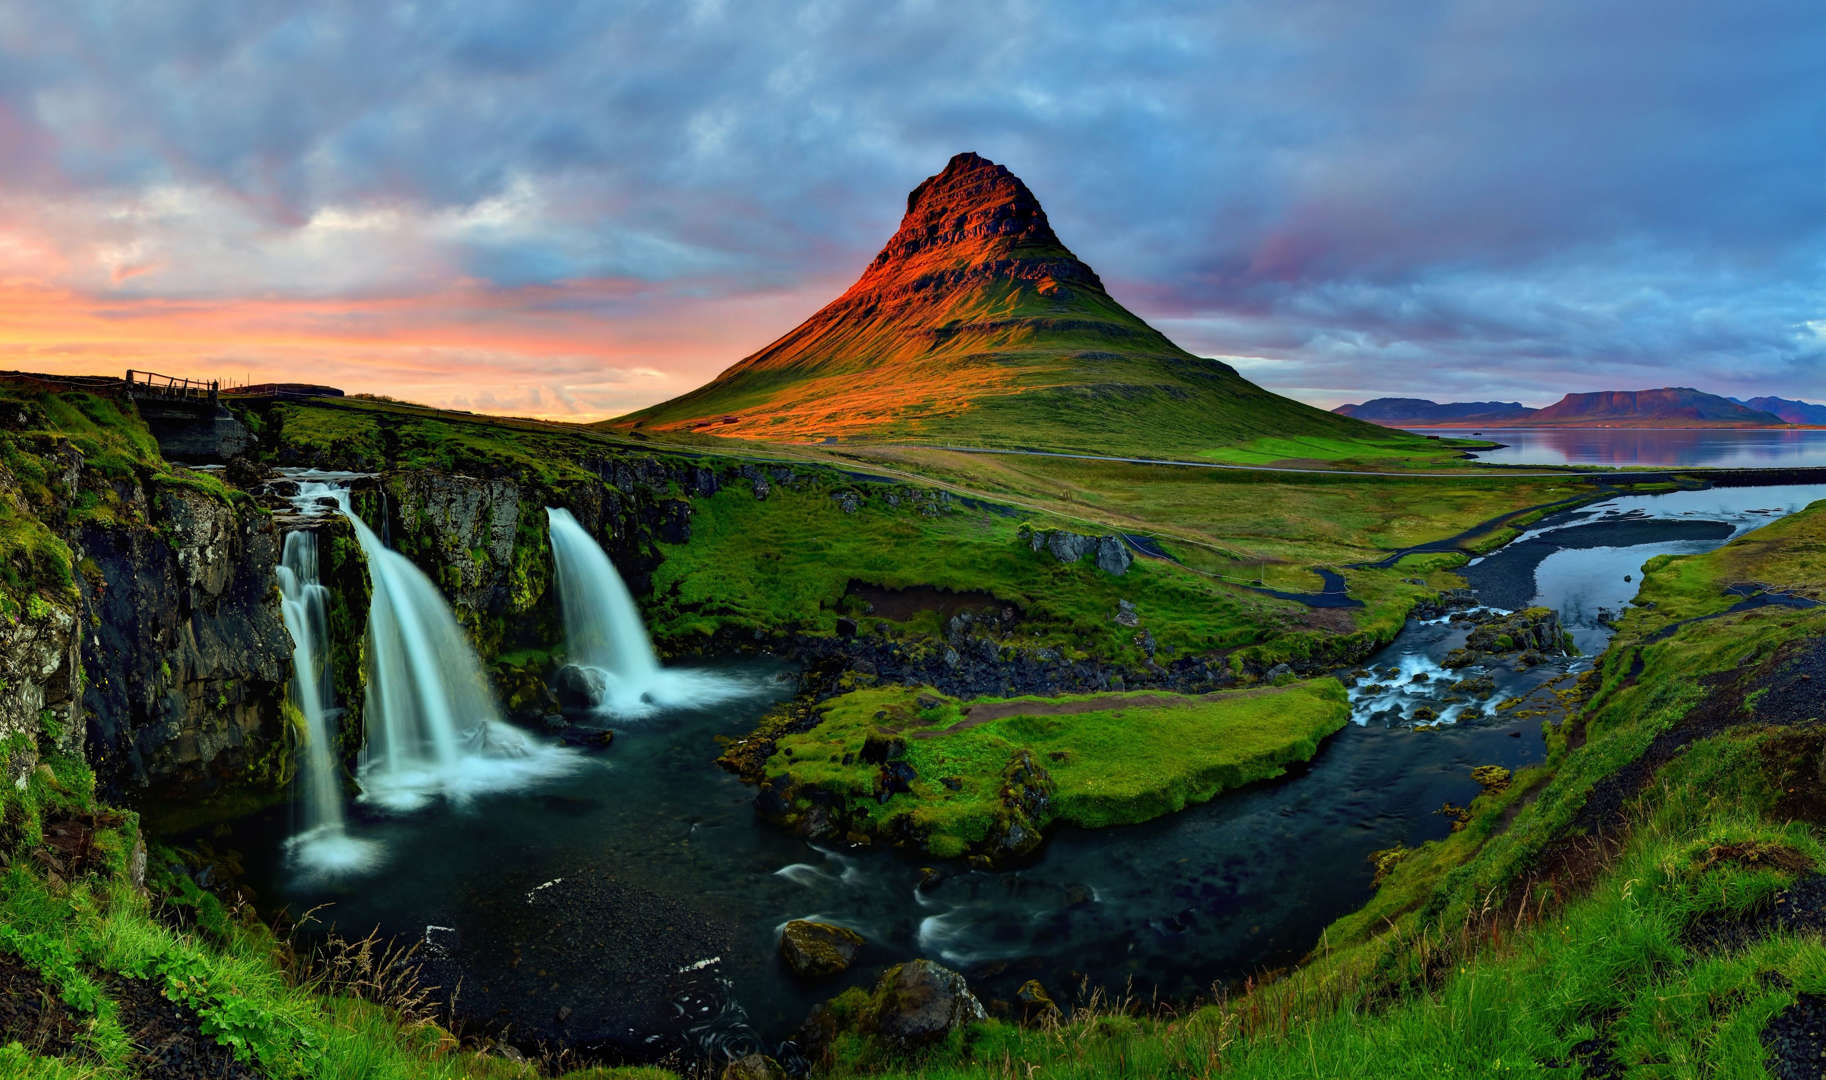 슬라이드 6/11: one of the most photographed mountain in Iceland became much more popular around the world after featuring into season 6 and 7 of Game of Thrones. Its name Kirkjufell literally means Church Mountain.